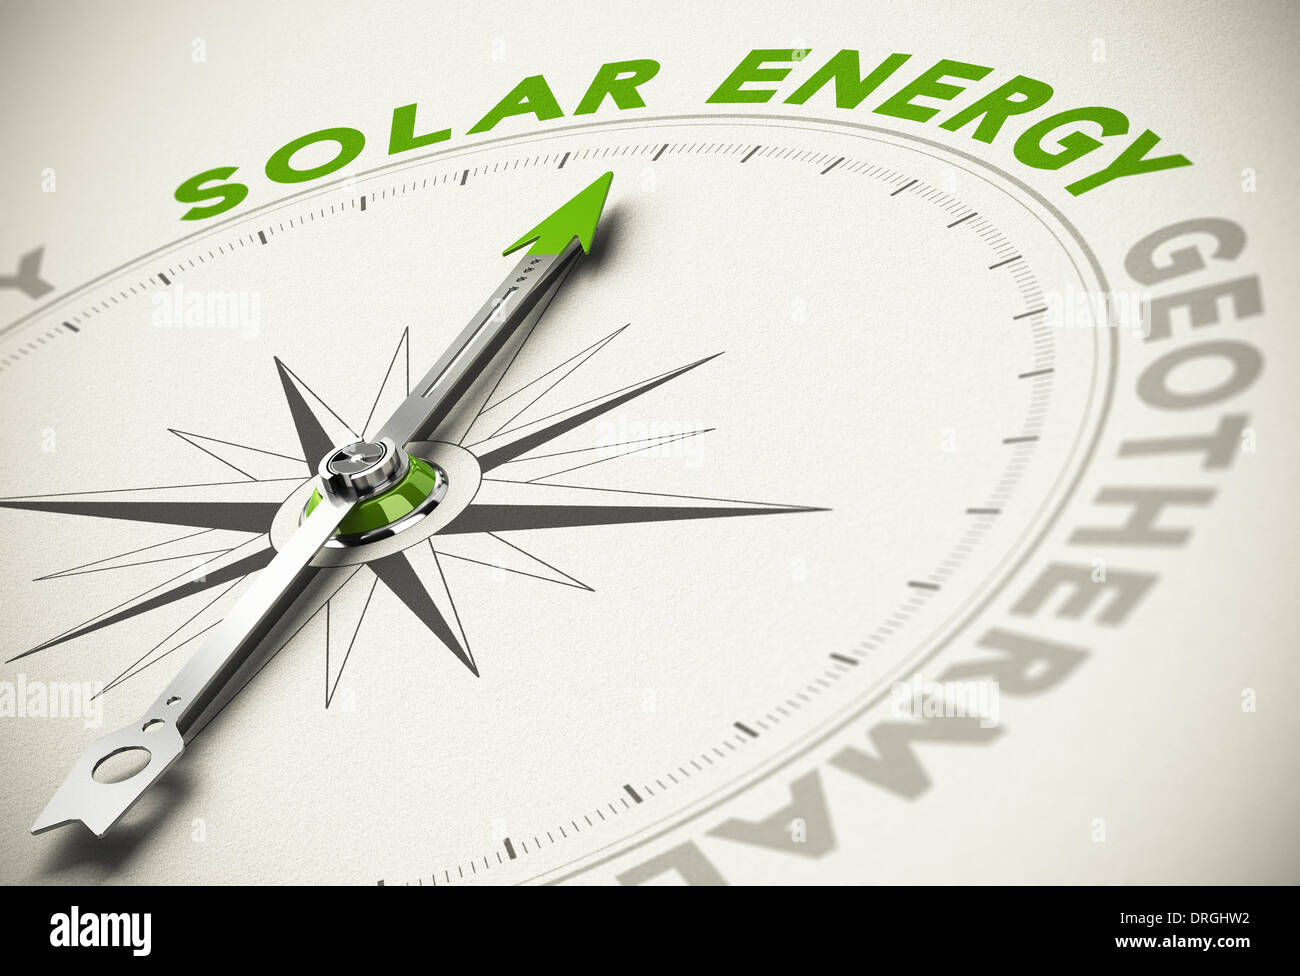 Kompass mit Nadel zeigt den Text Solarenergie - grüne und erneuerbare Energien Konzept Unschärfe-Effekt. Stockfoto